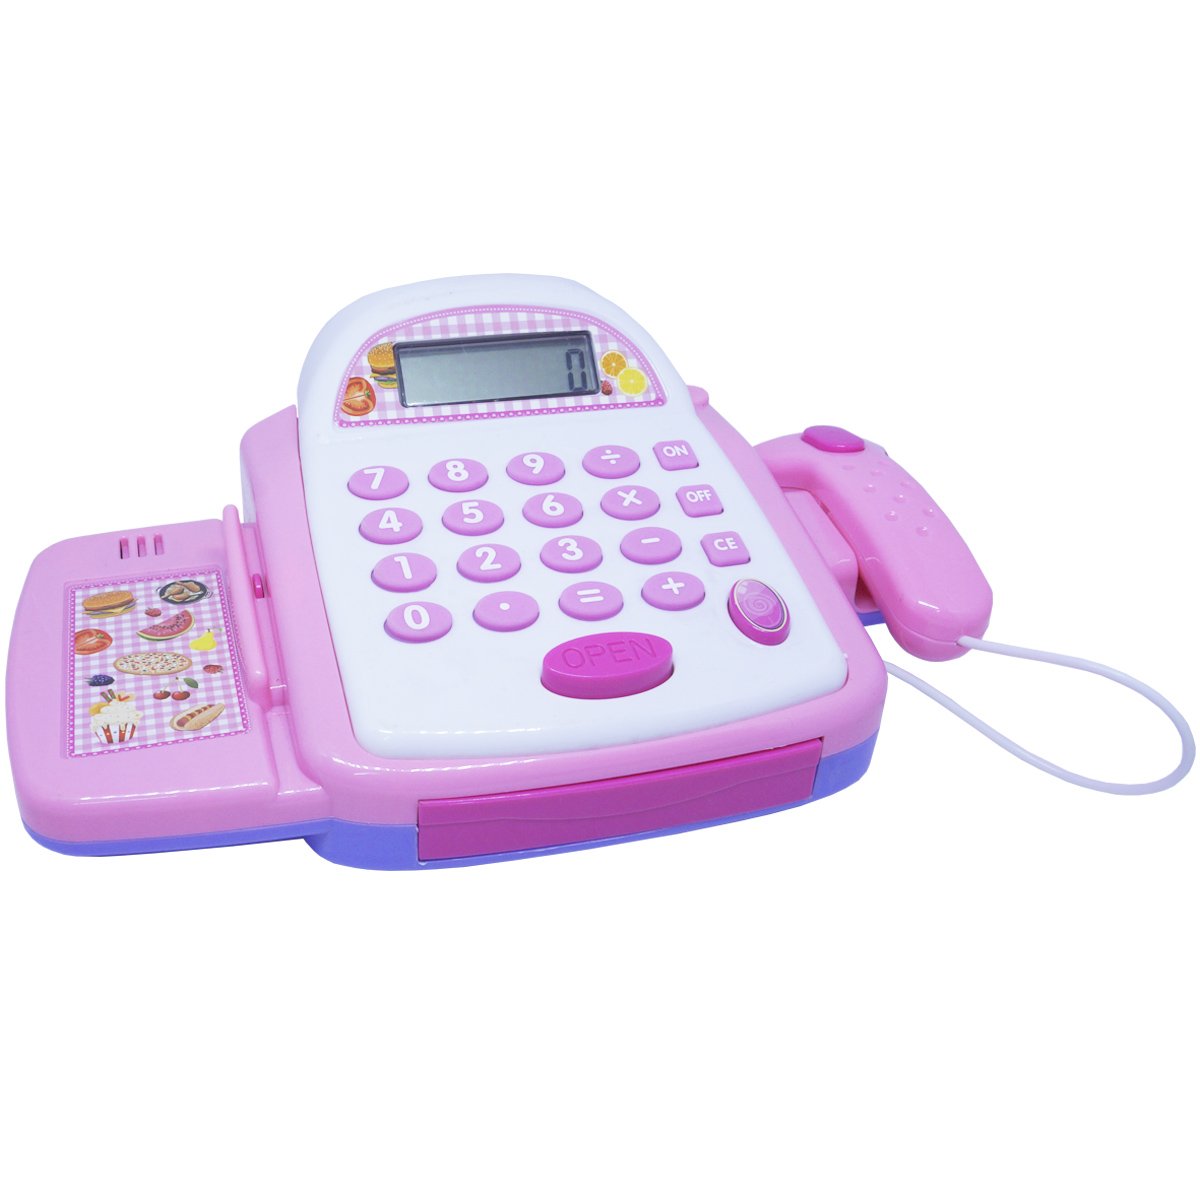 Caixa Registradora Infantil Brinquedo Calculadora Mercadinho com Luz e Som Importway BW042RS Rosa